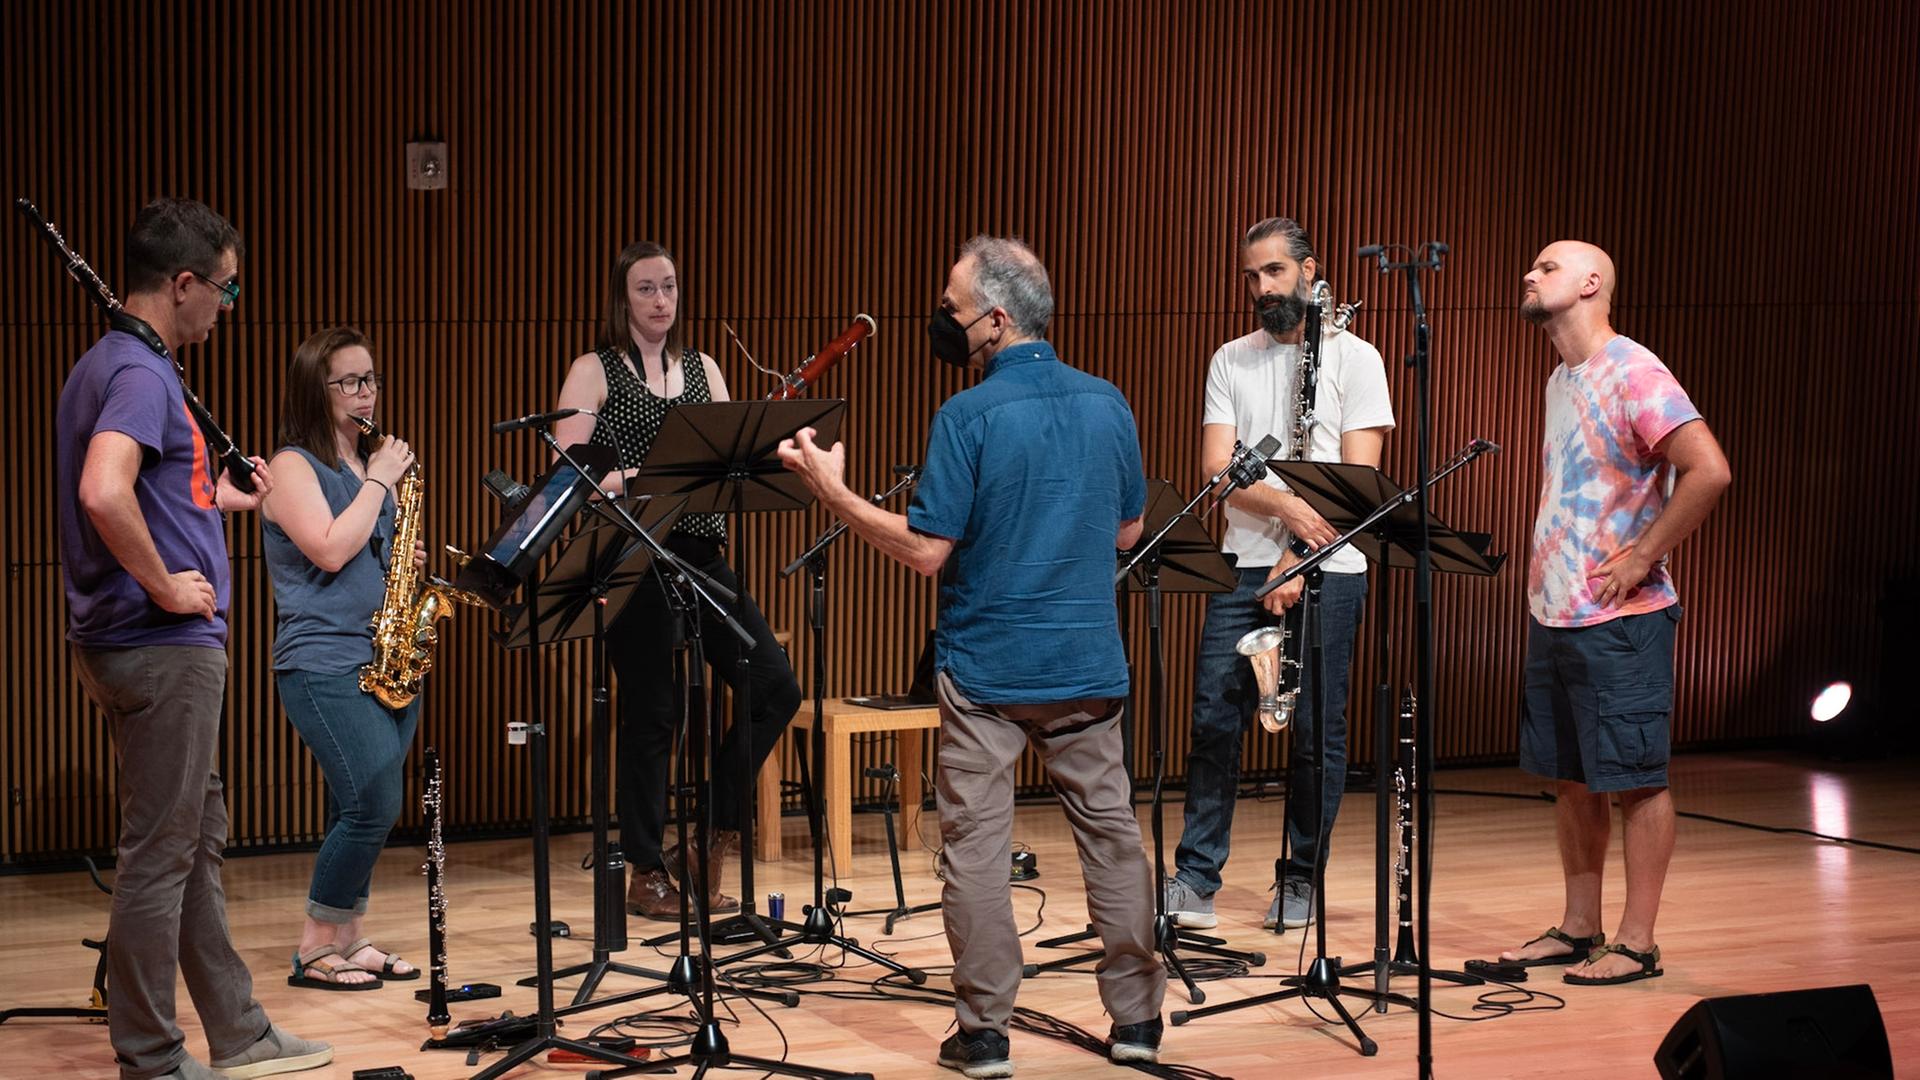 Die 5 Musiker des Ensembles stehen mit ihren Instrumenten auf der Bühne während der Komponist ihnen etwas erklärt